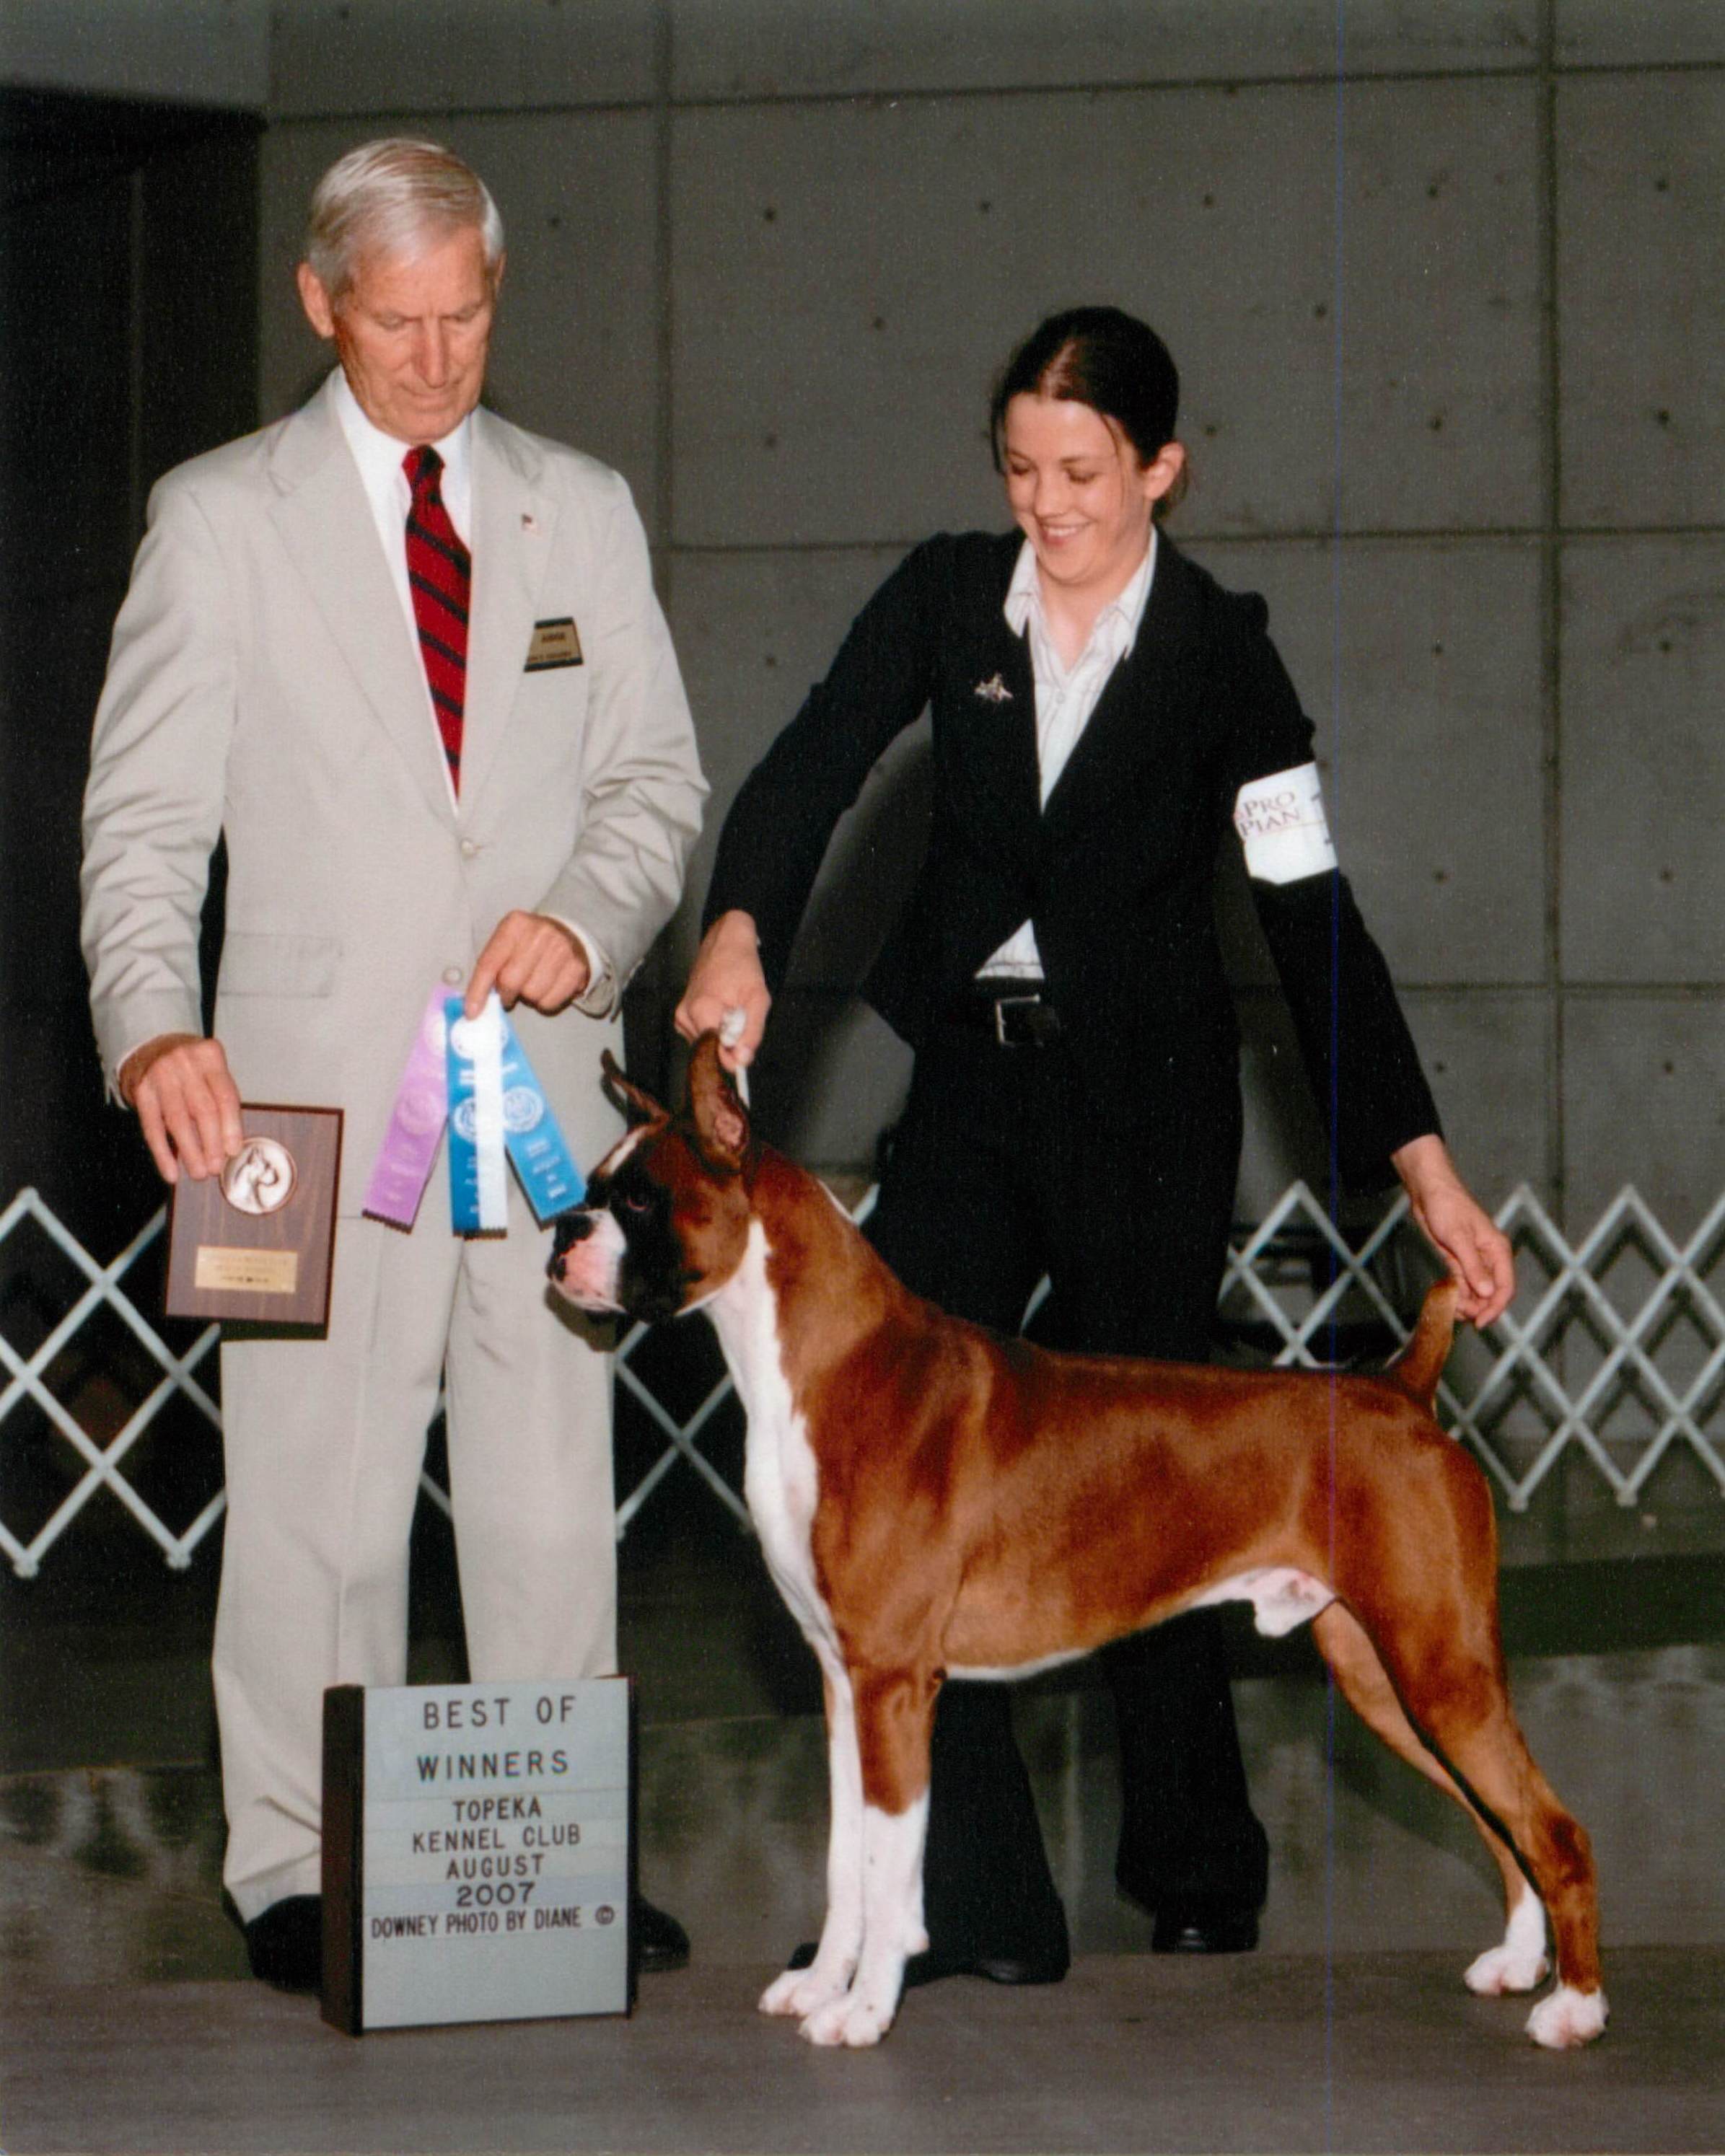 Best of Winners & Winners Dog @ 2007 Specialty Show #2